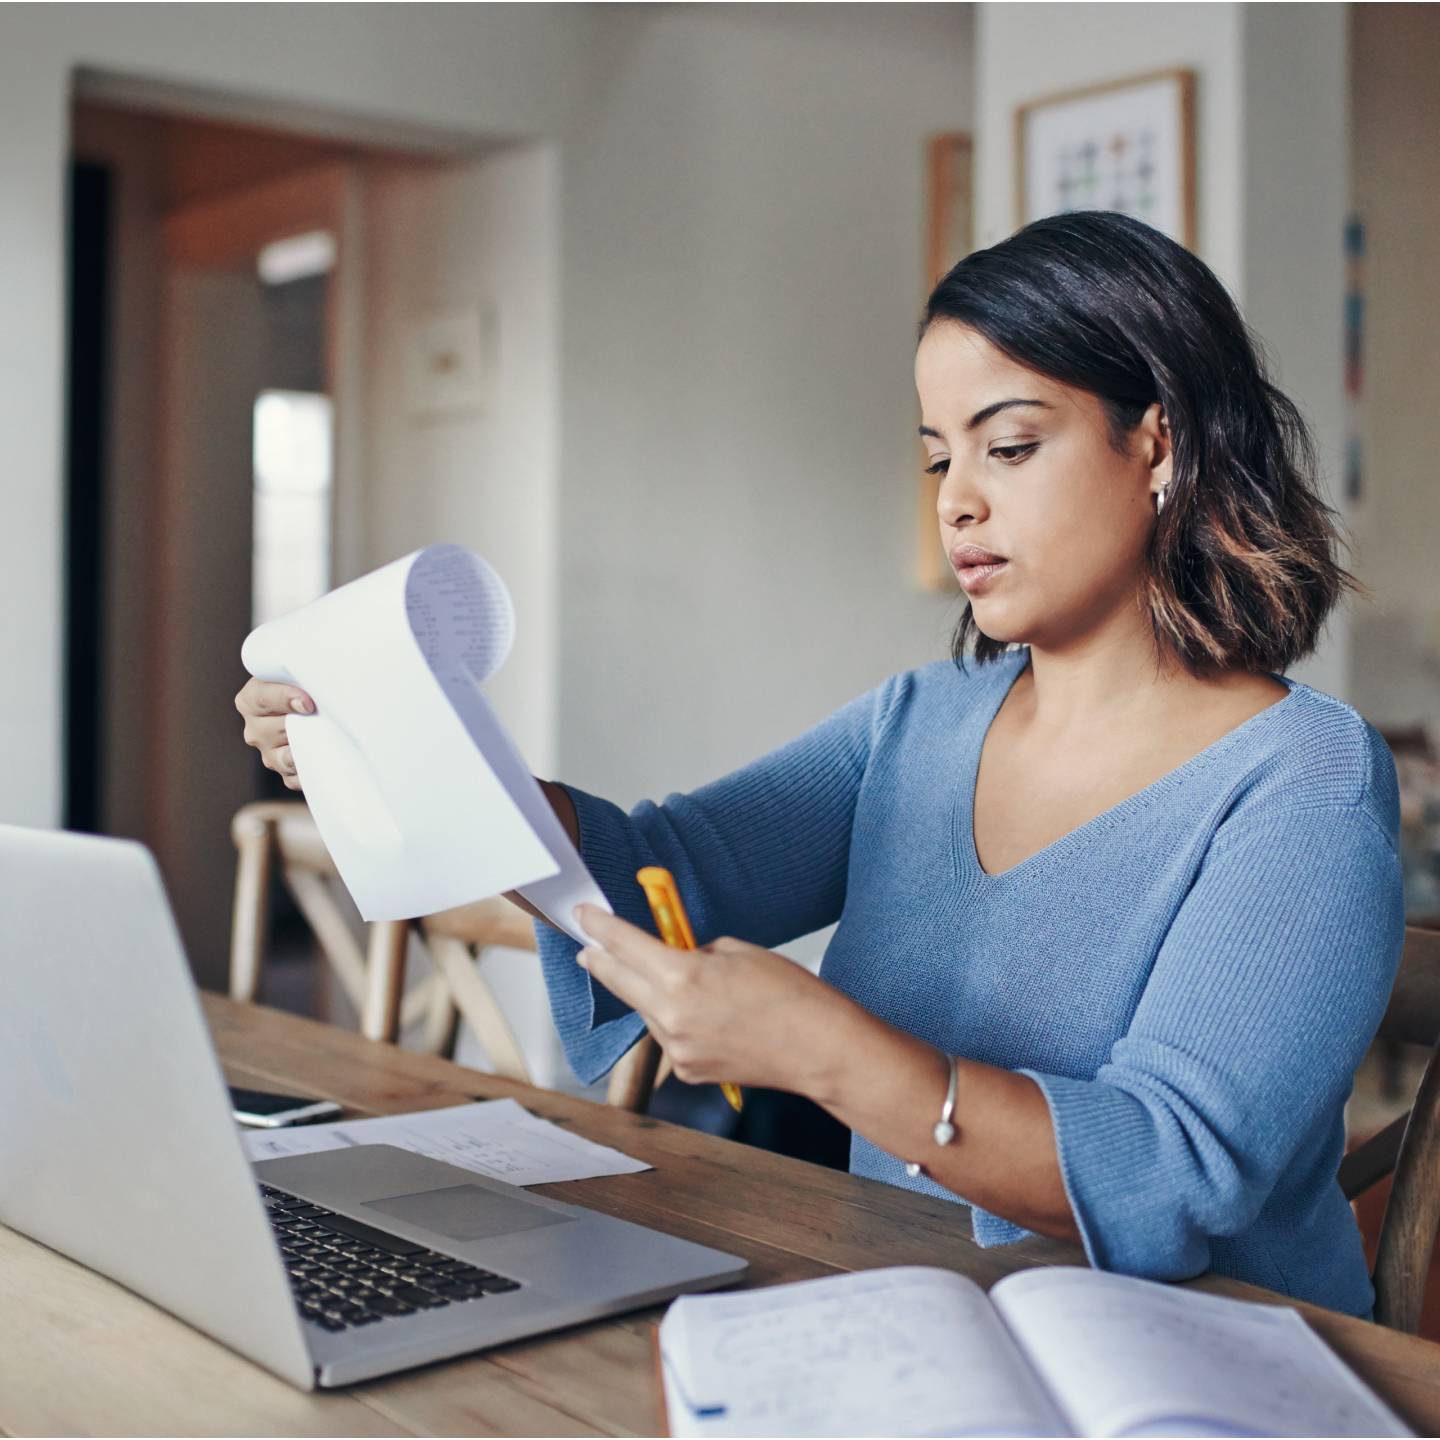 Una donna lavora al computer portatile e legge dei documenti cartacei.